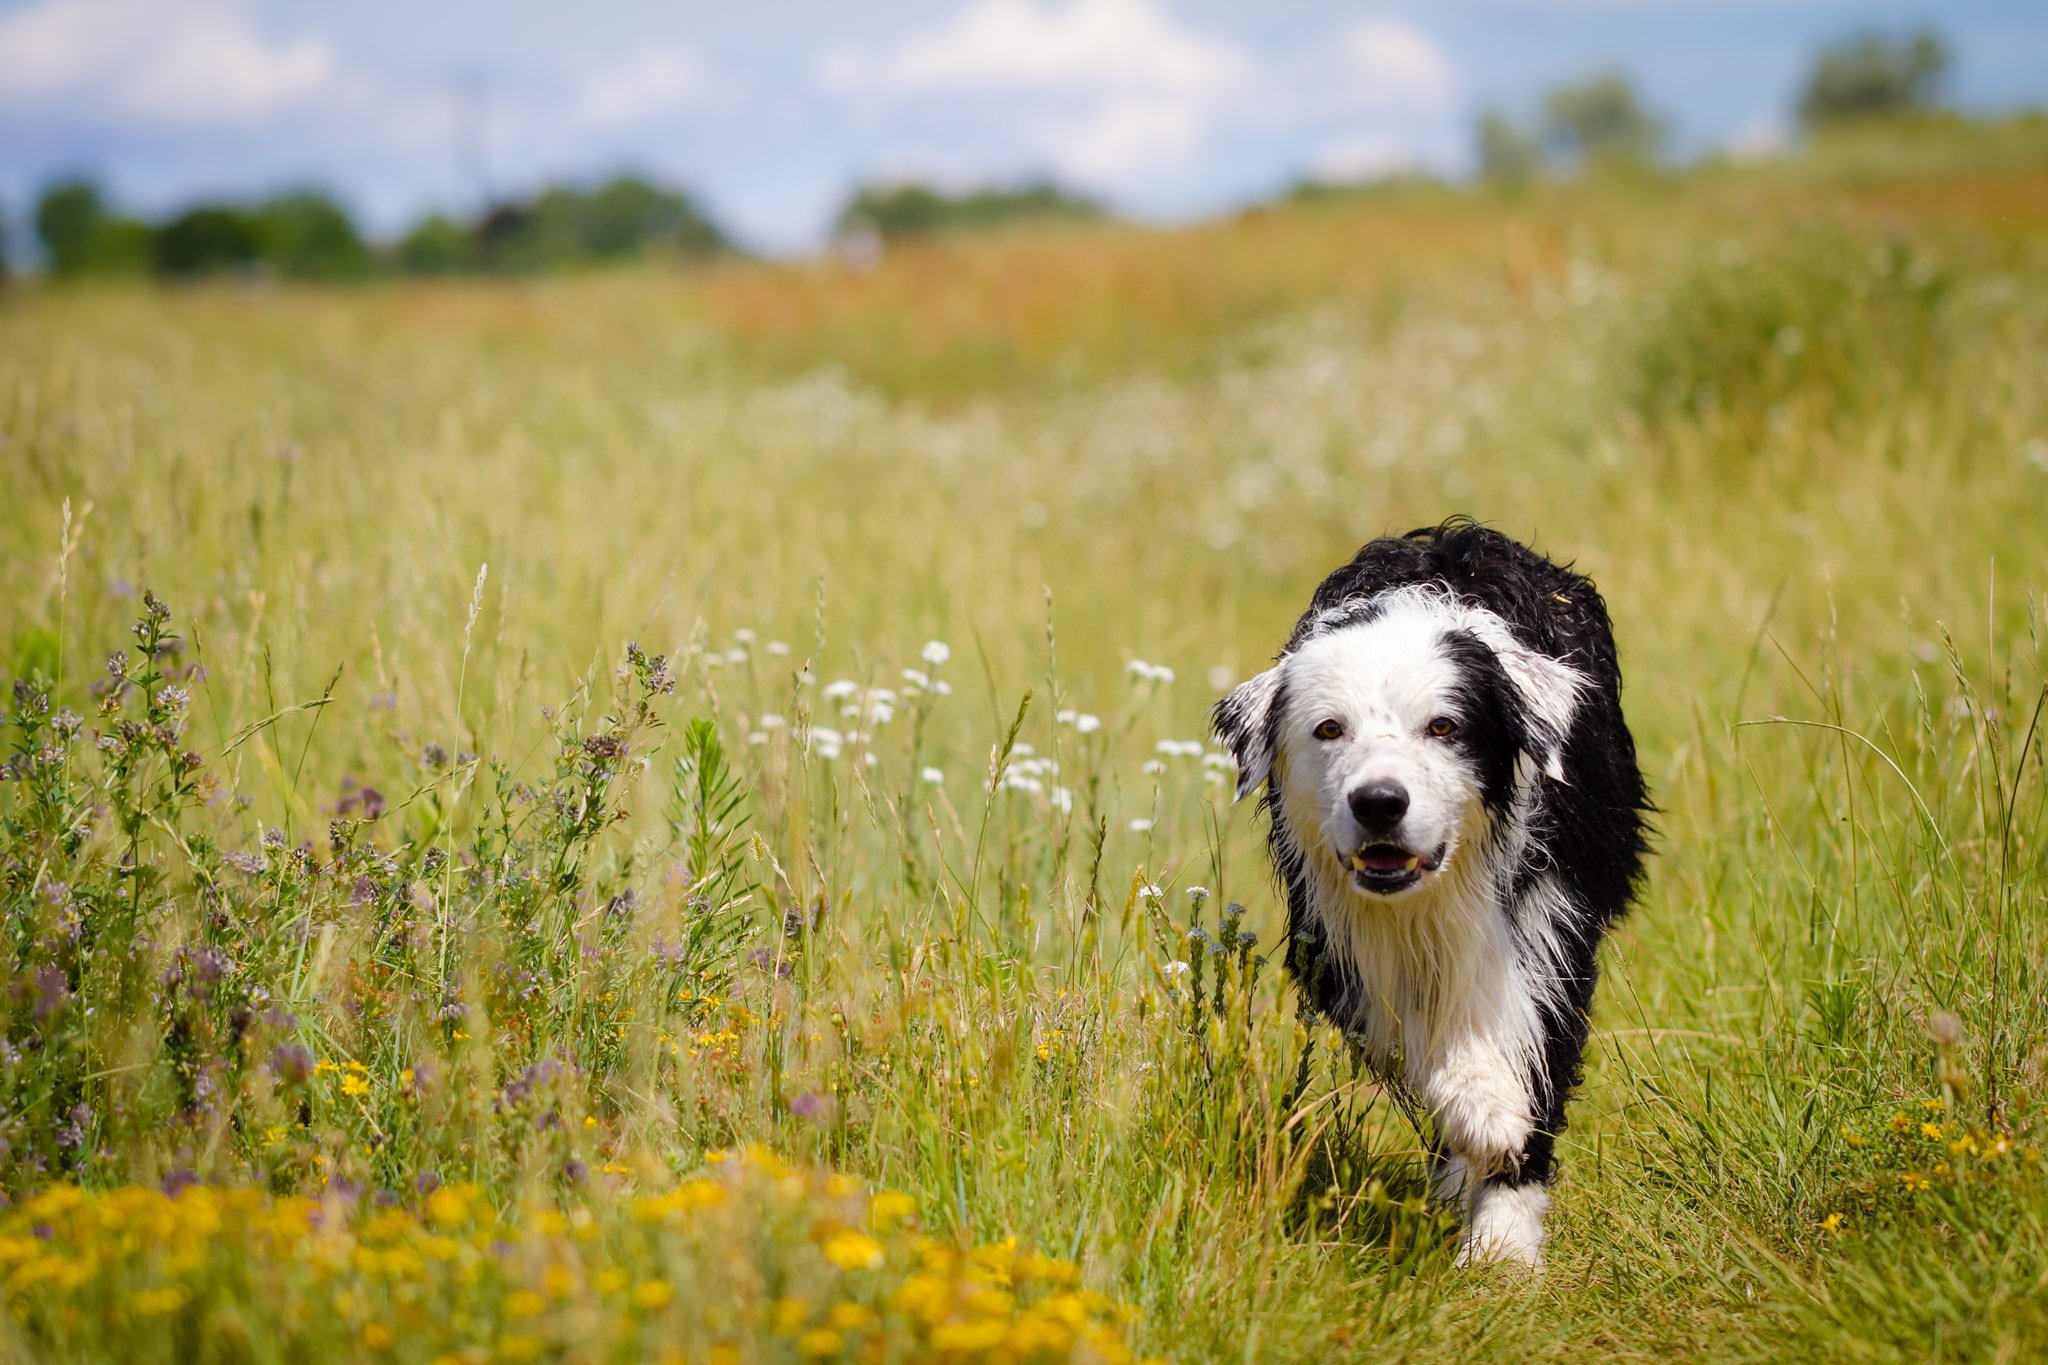 Grass animals. Бордер колли щенки. Бордер колли в поле. Собака в поле. Собака на траве.